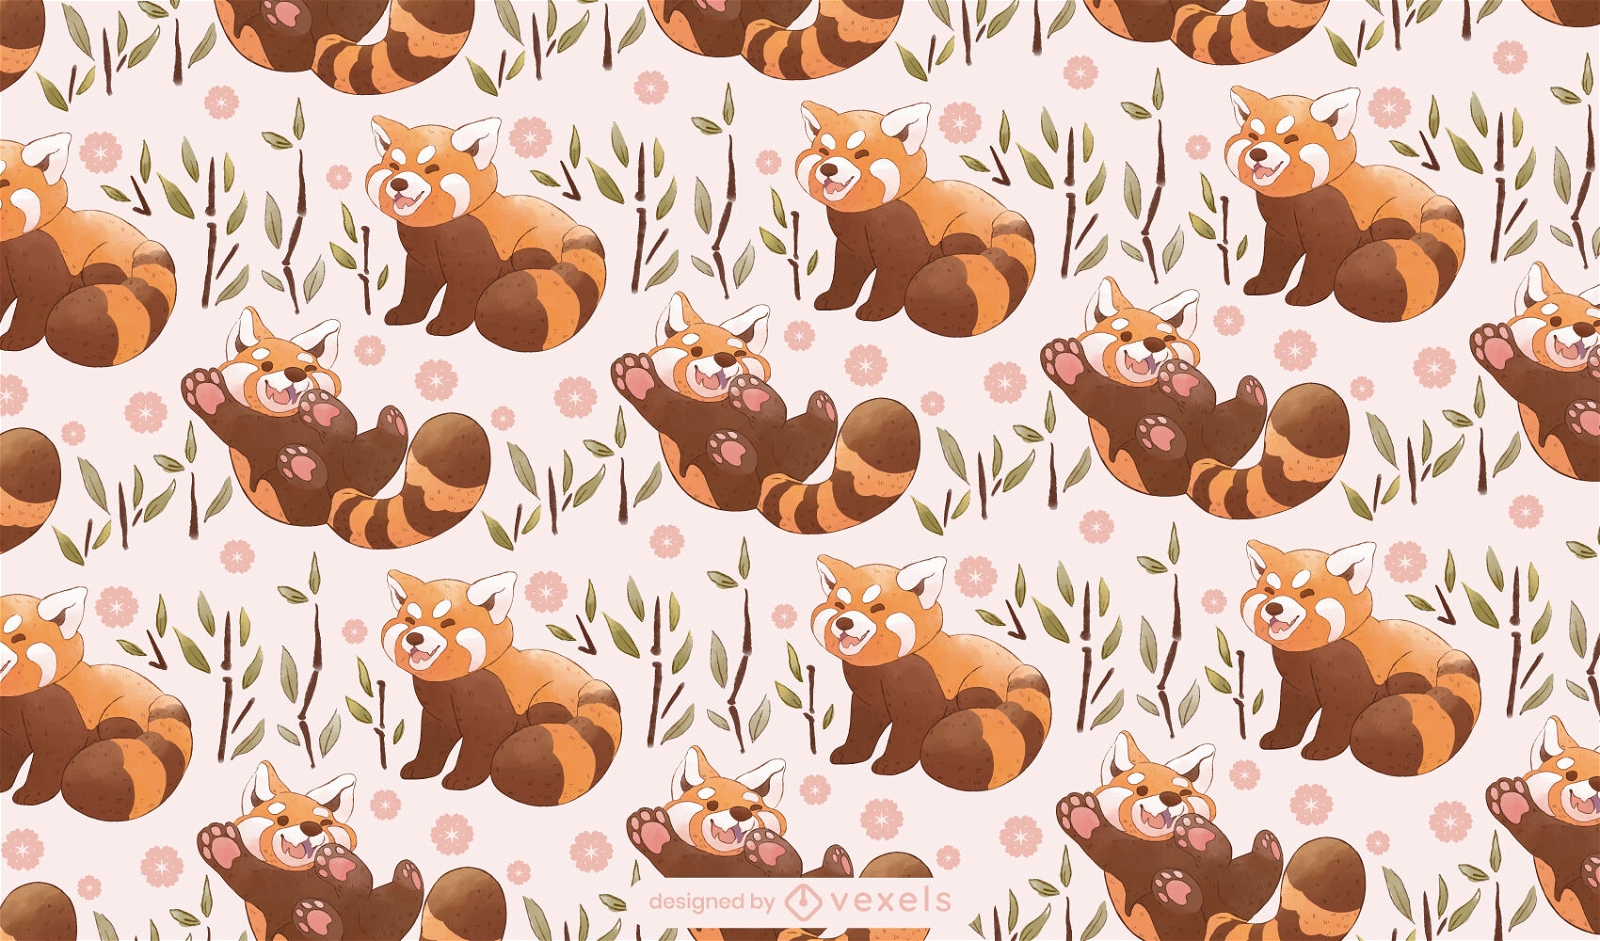 Adorable red panda animals pattern design